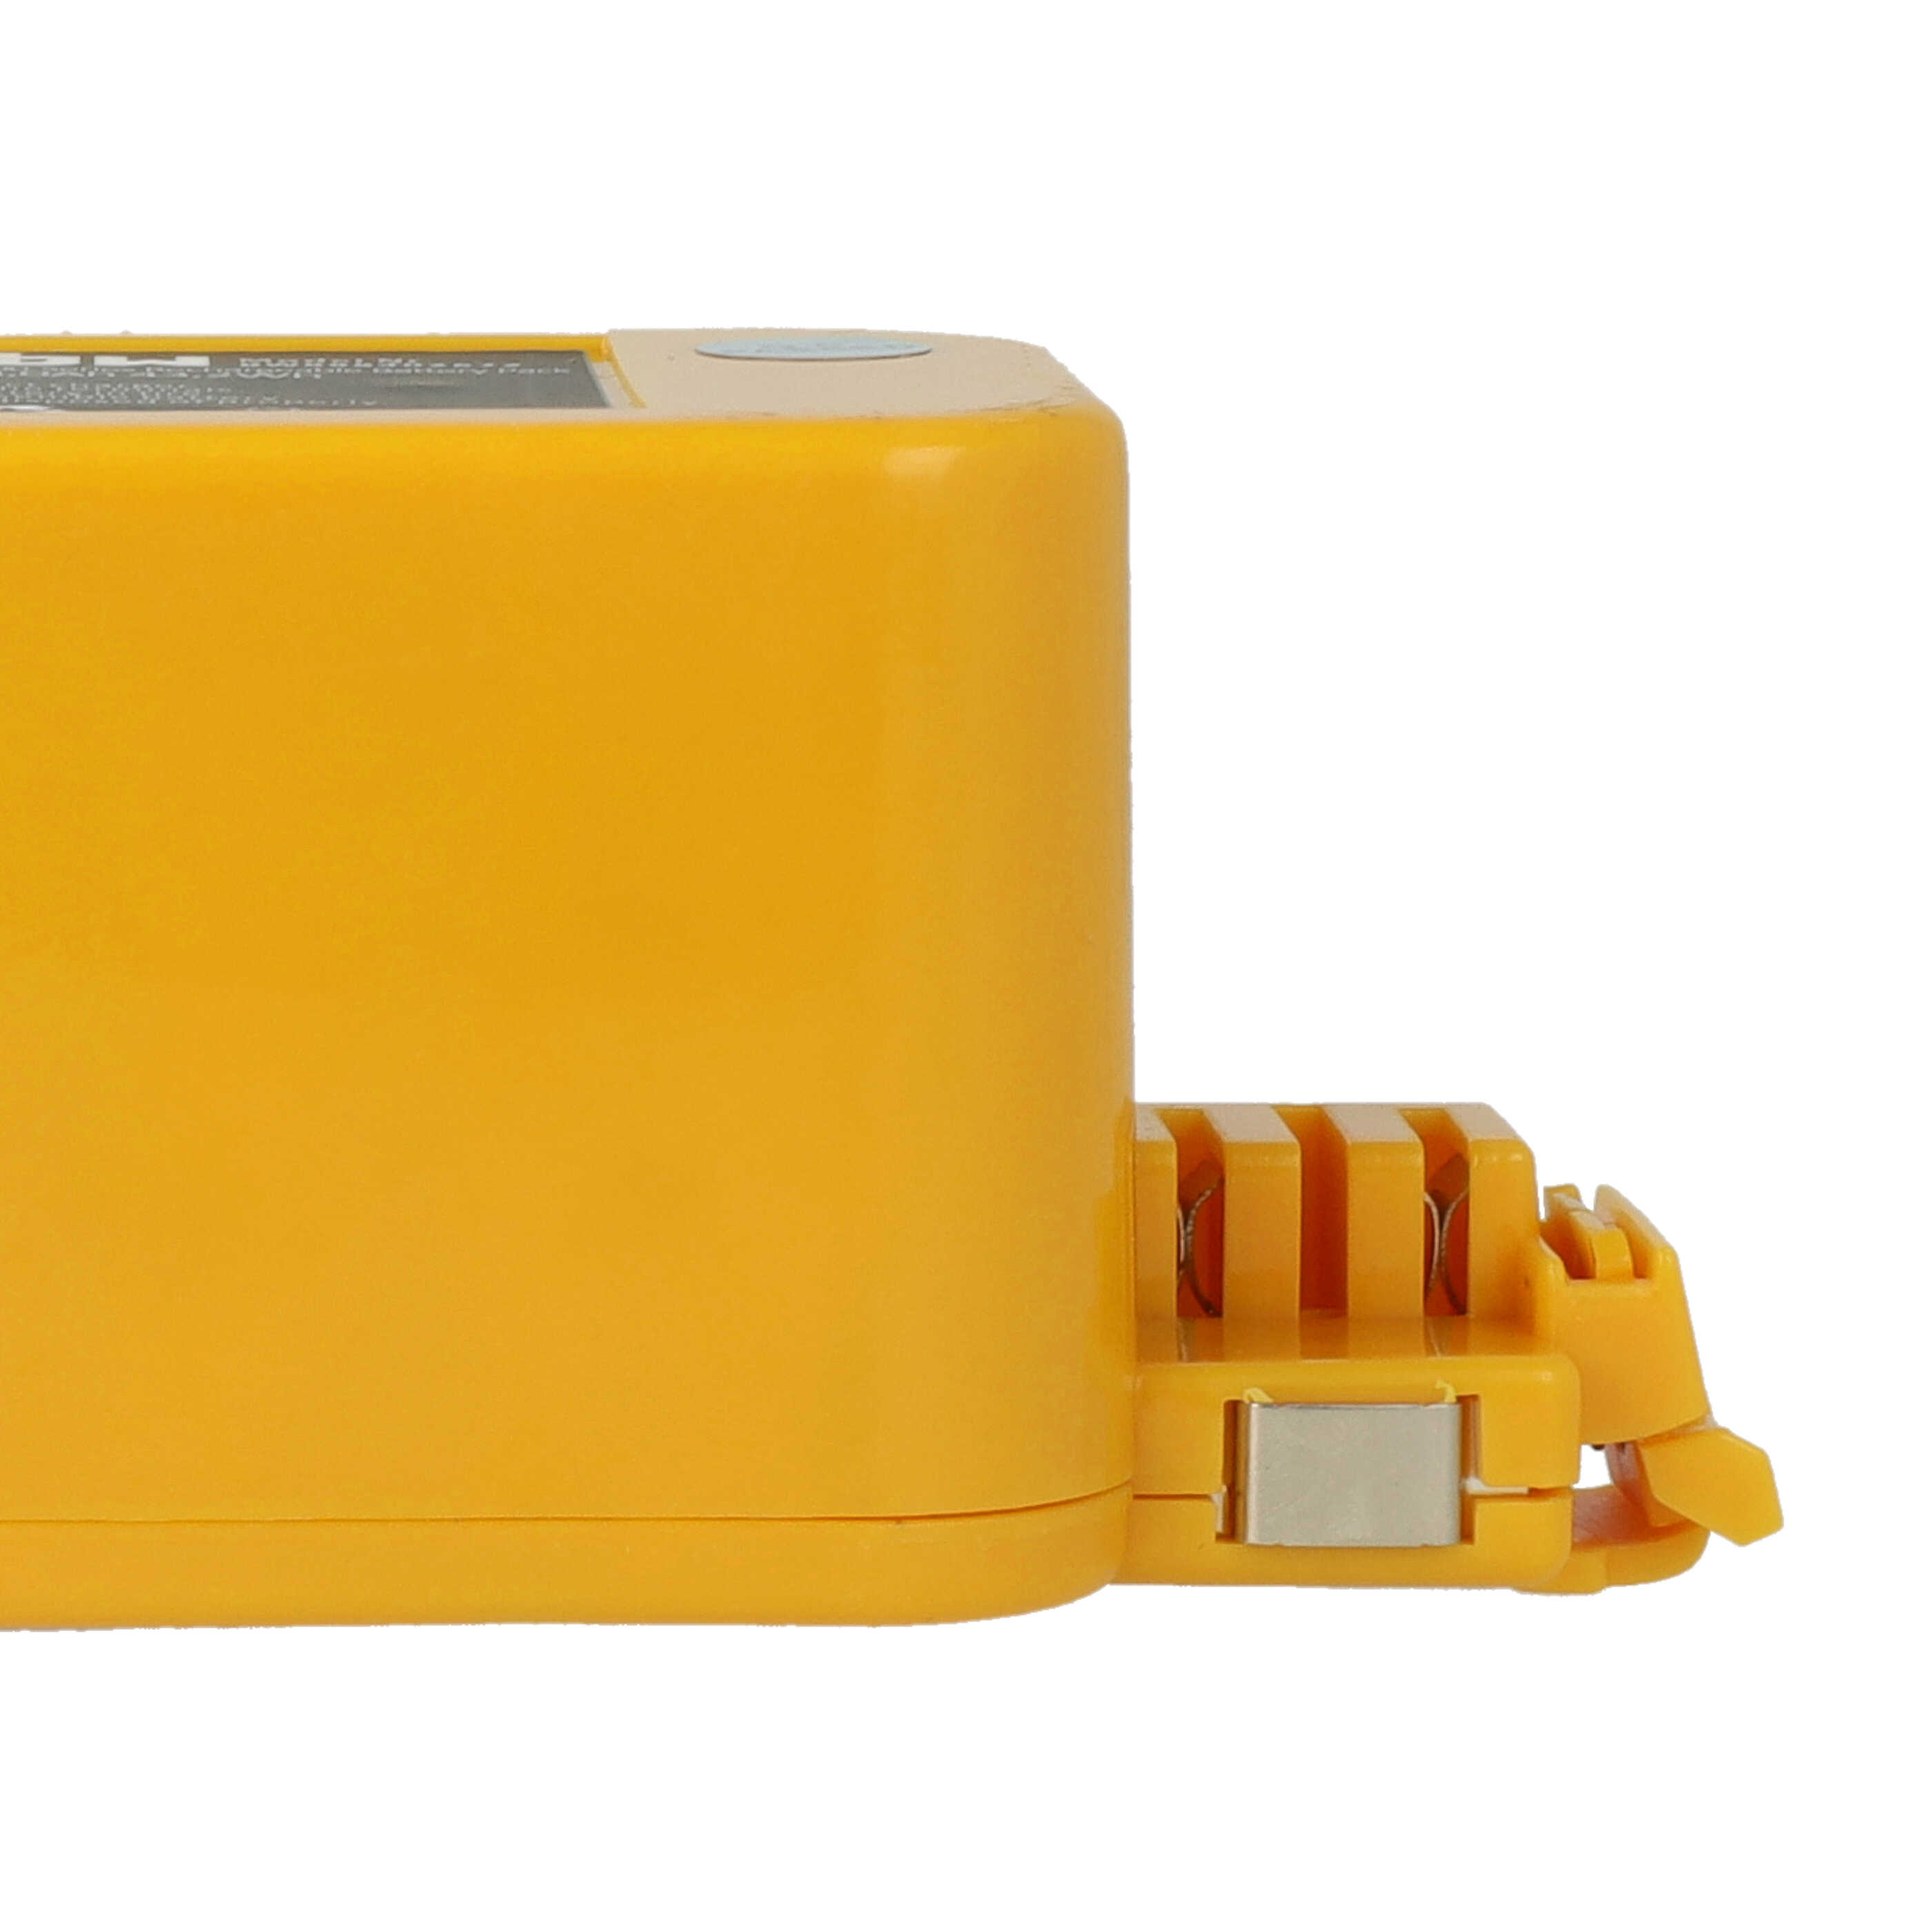 Akumulator do odkurzacza zamiennik APS 4905, NC-3493-919, 11700, 17373 - 3000 mAh 14,4 V NiMH, żółty